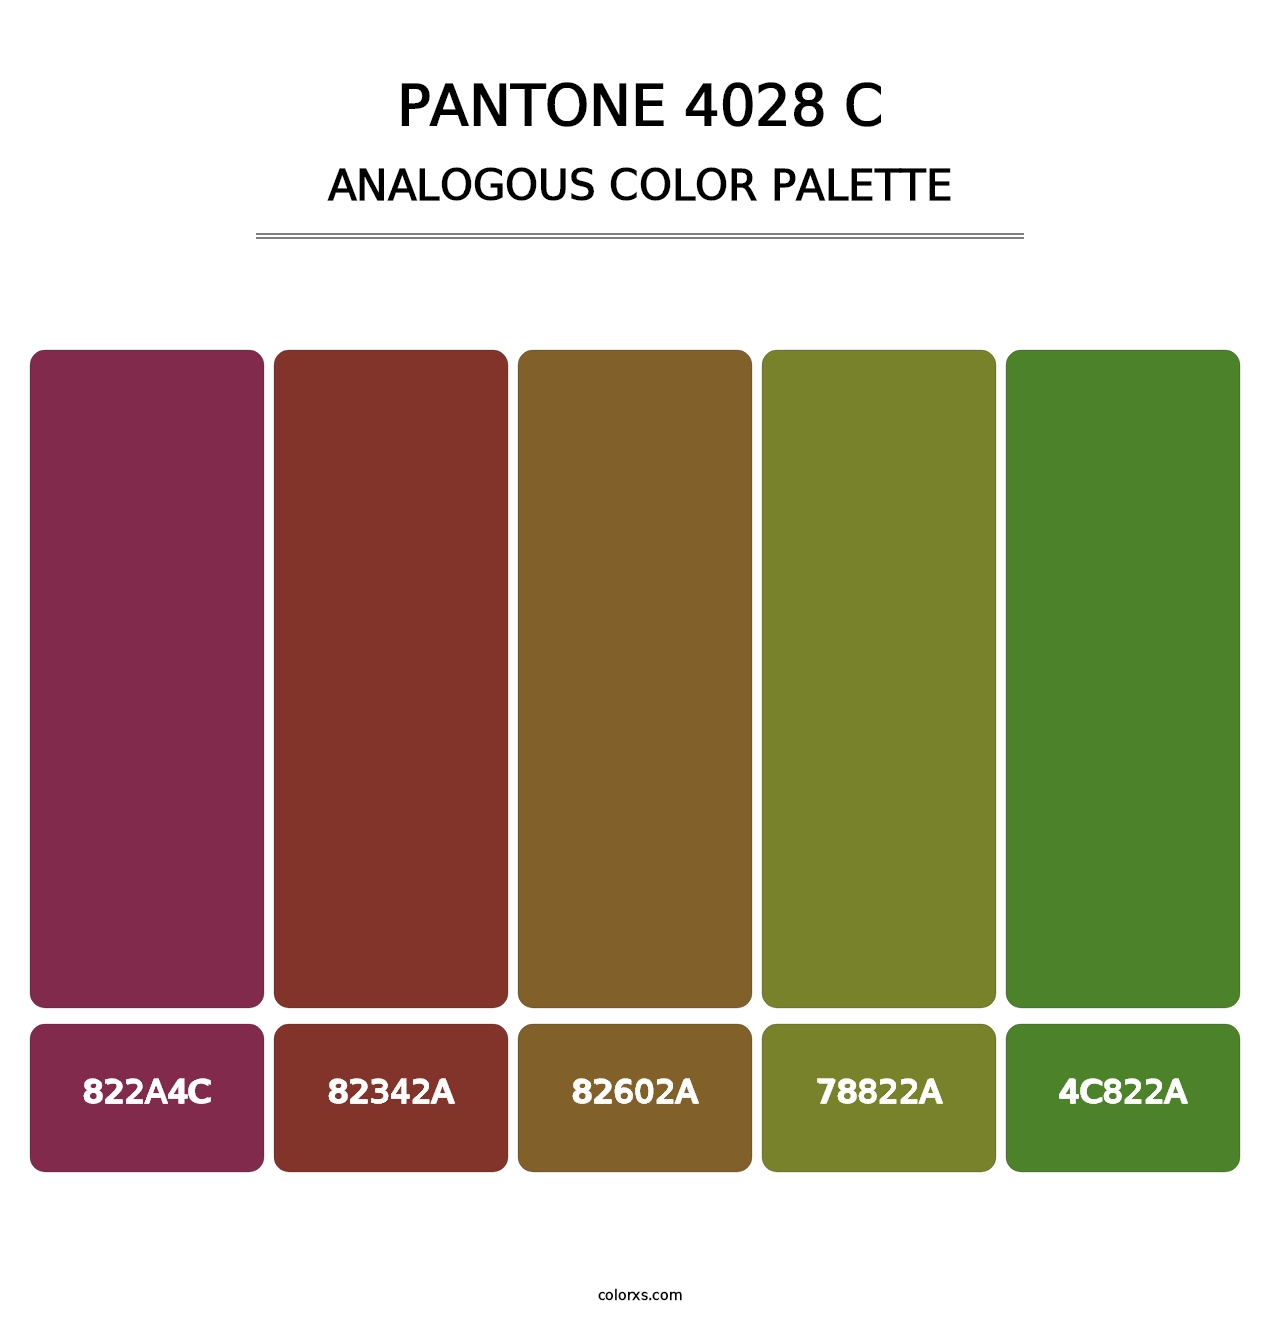 PANTONE 4028 C - Analogous Color Palette